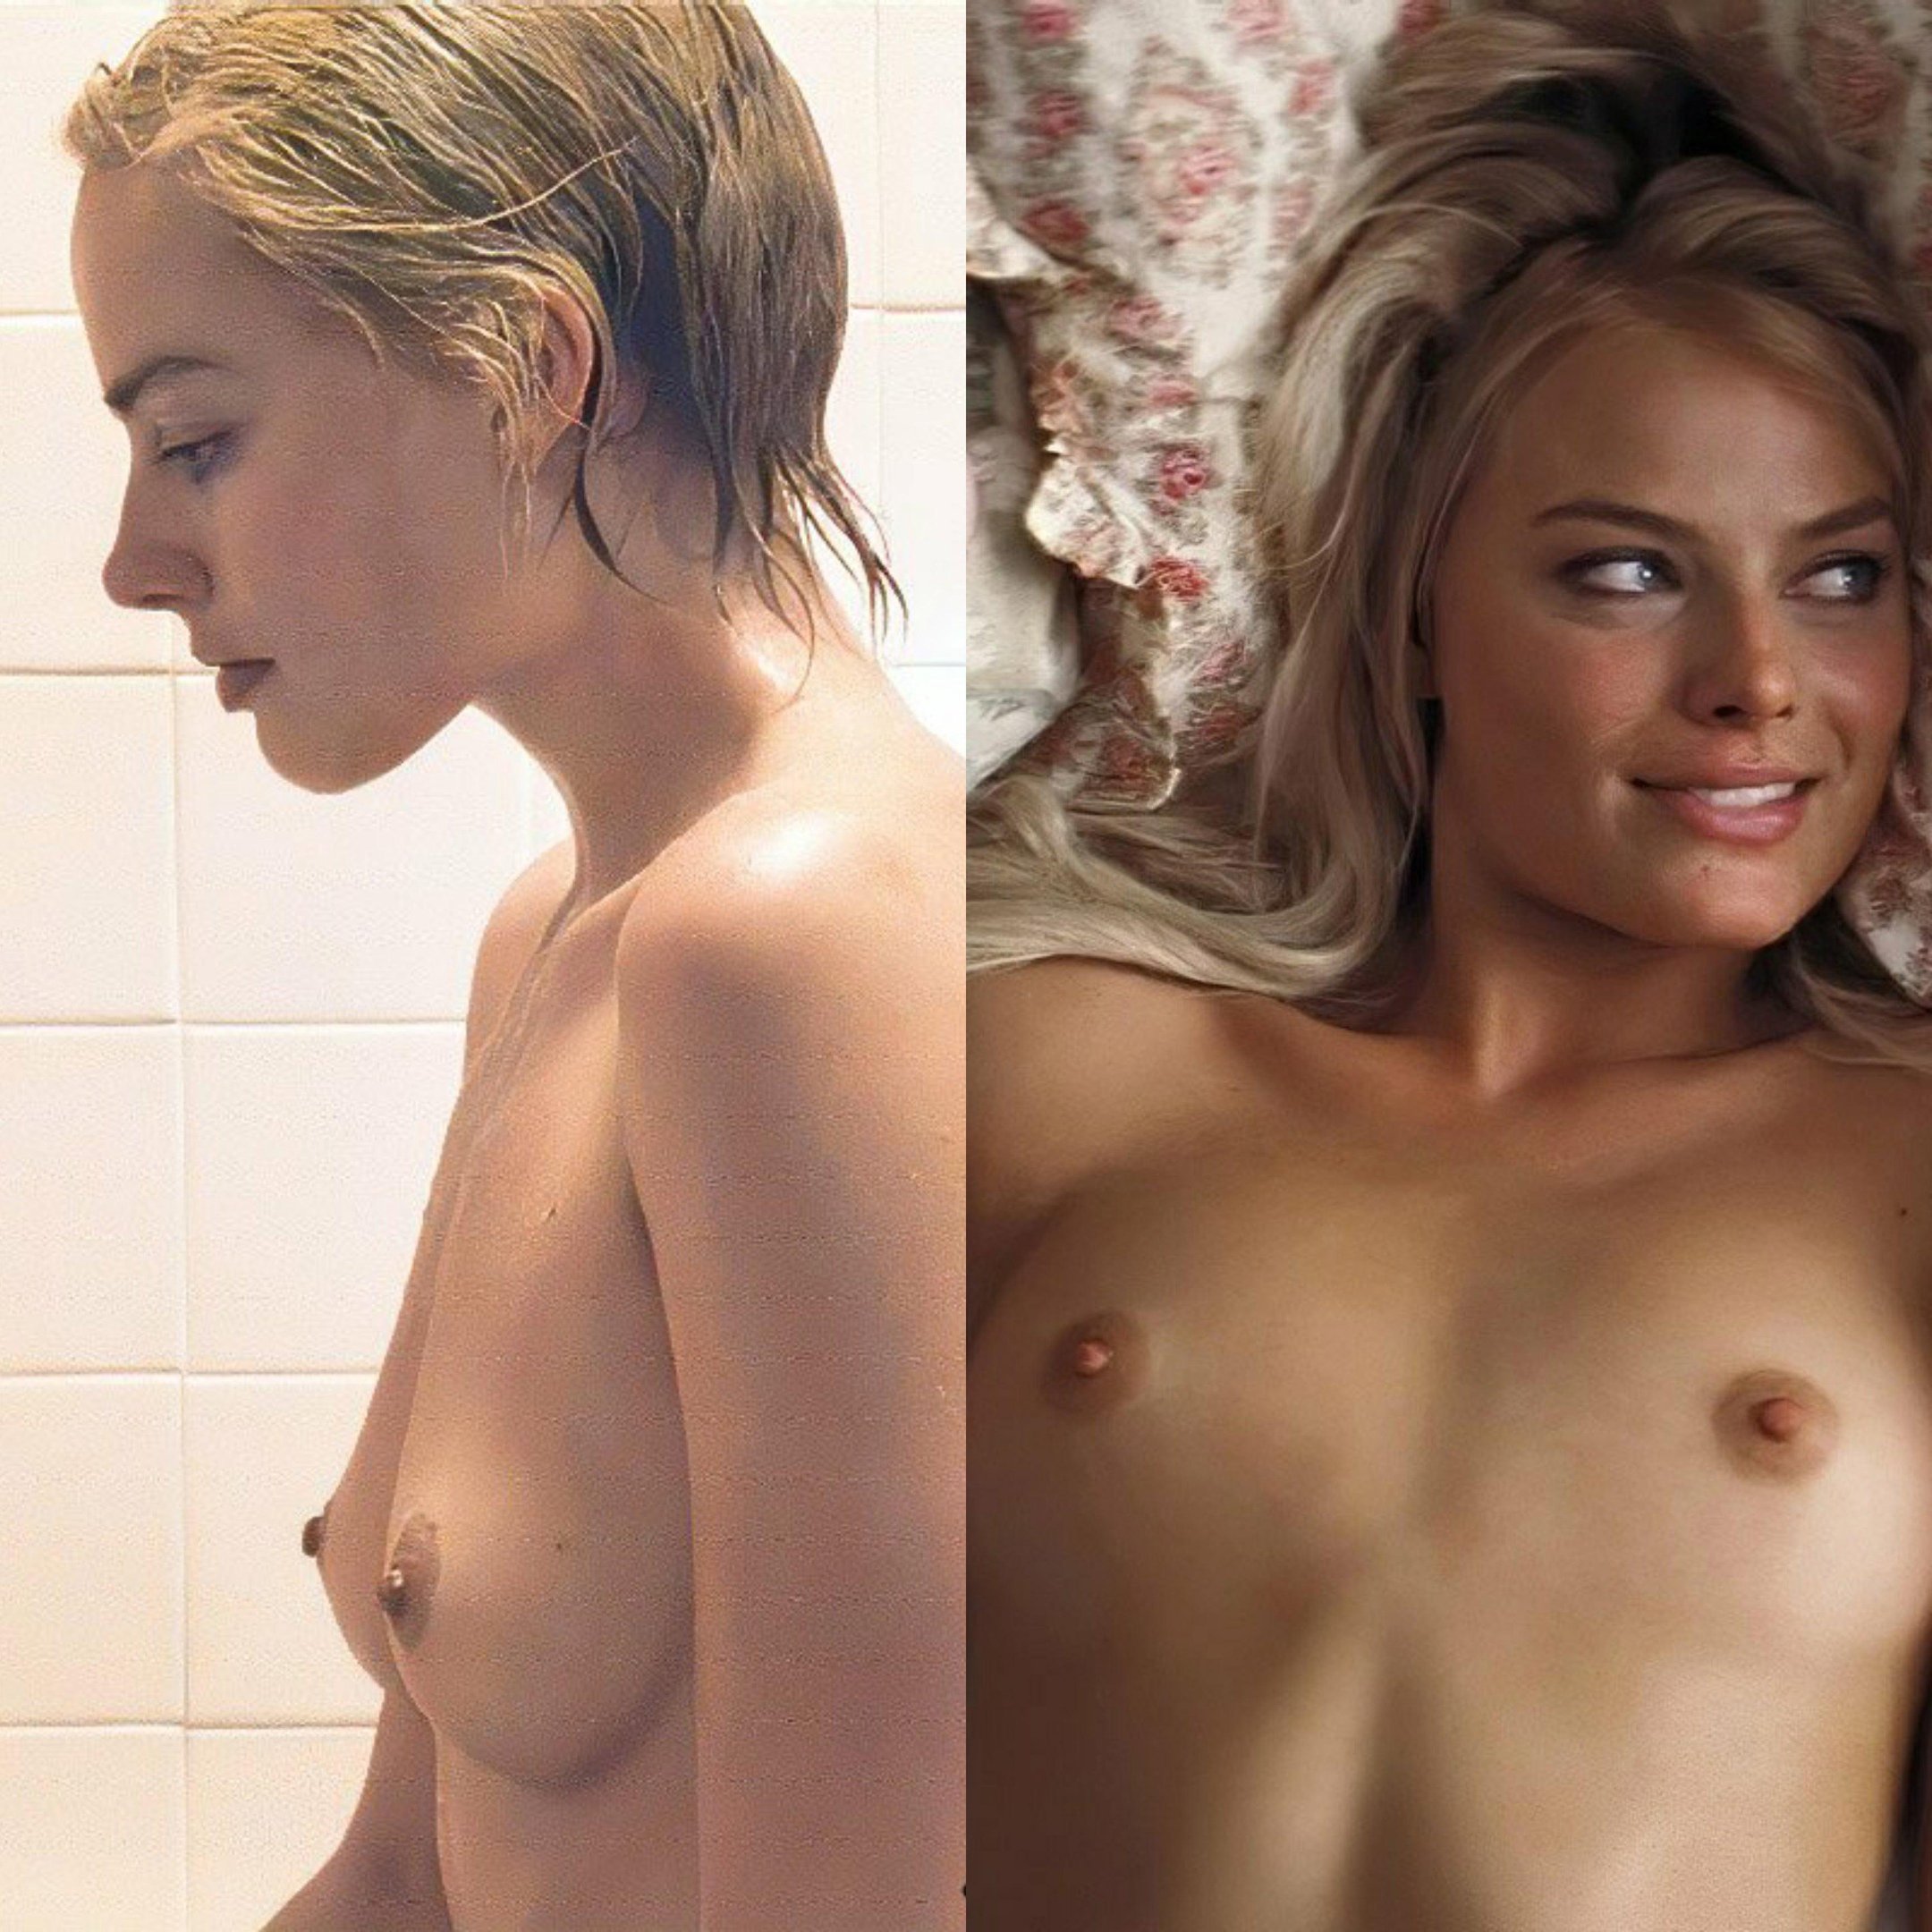 Margot robbie's boobs